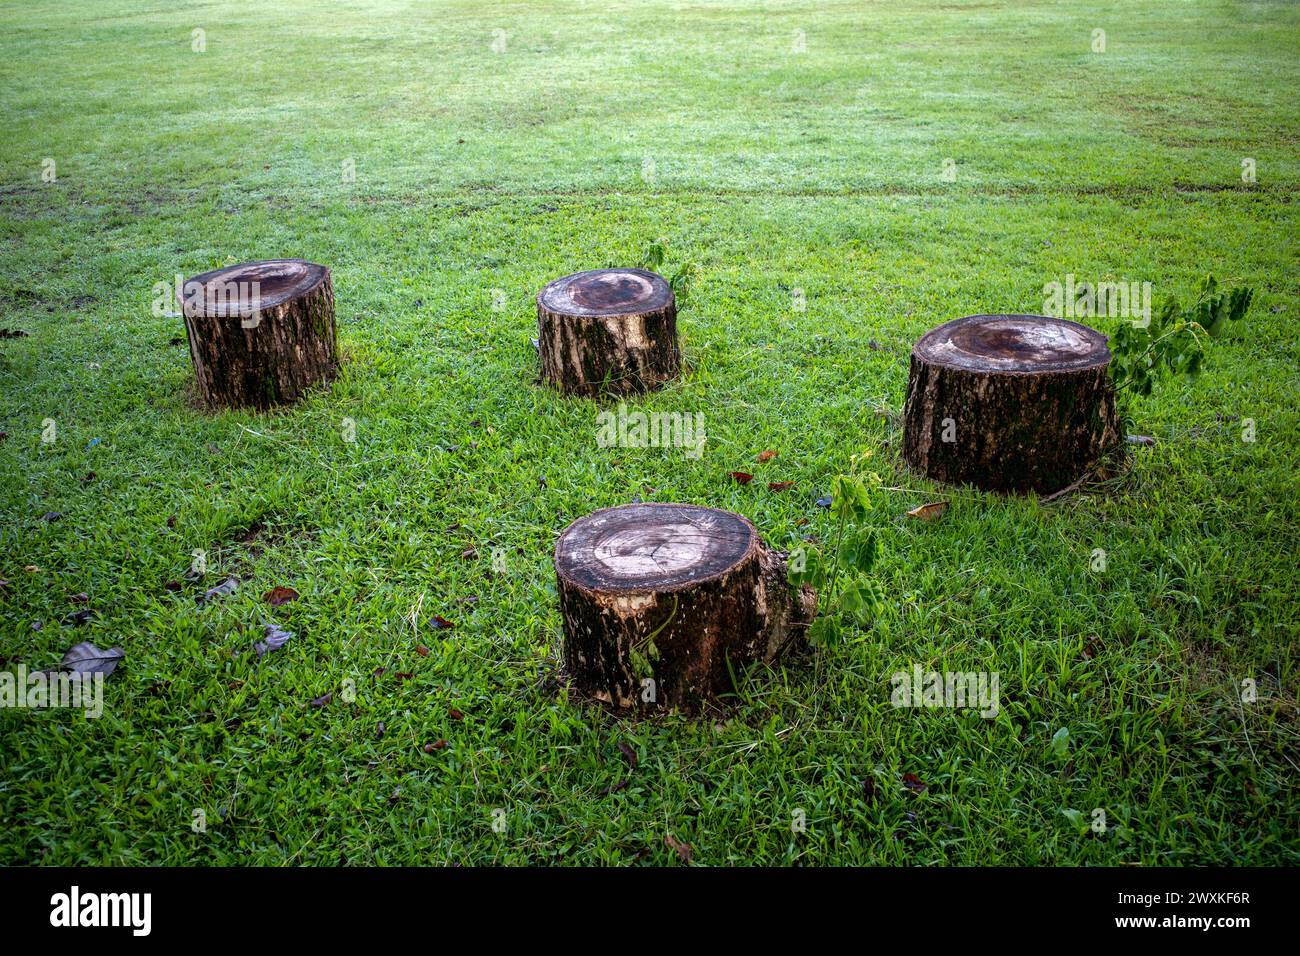 Neue Triebe wachsen auf Albizia saman- oder Rain Tree-Holzstücken auf grünem Grasfeld. Stockfoto